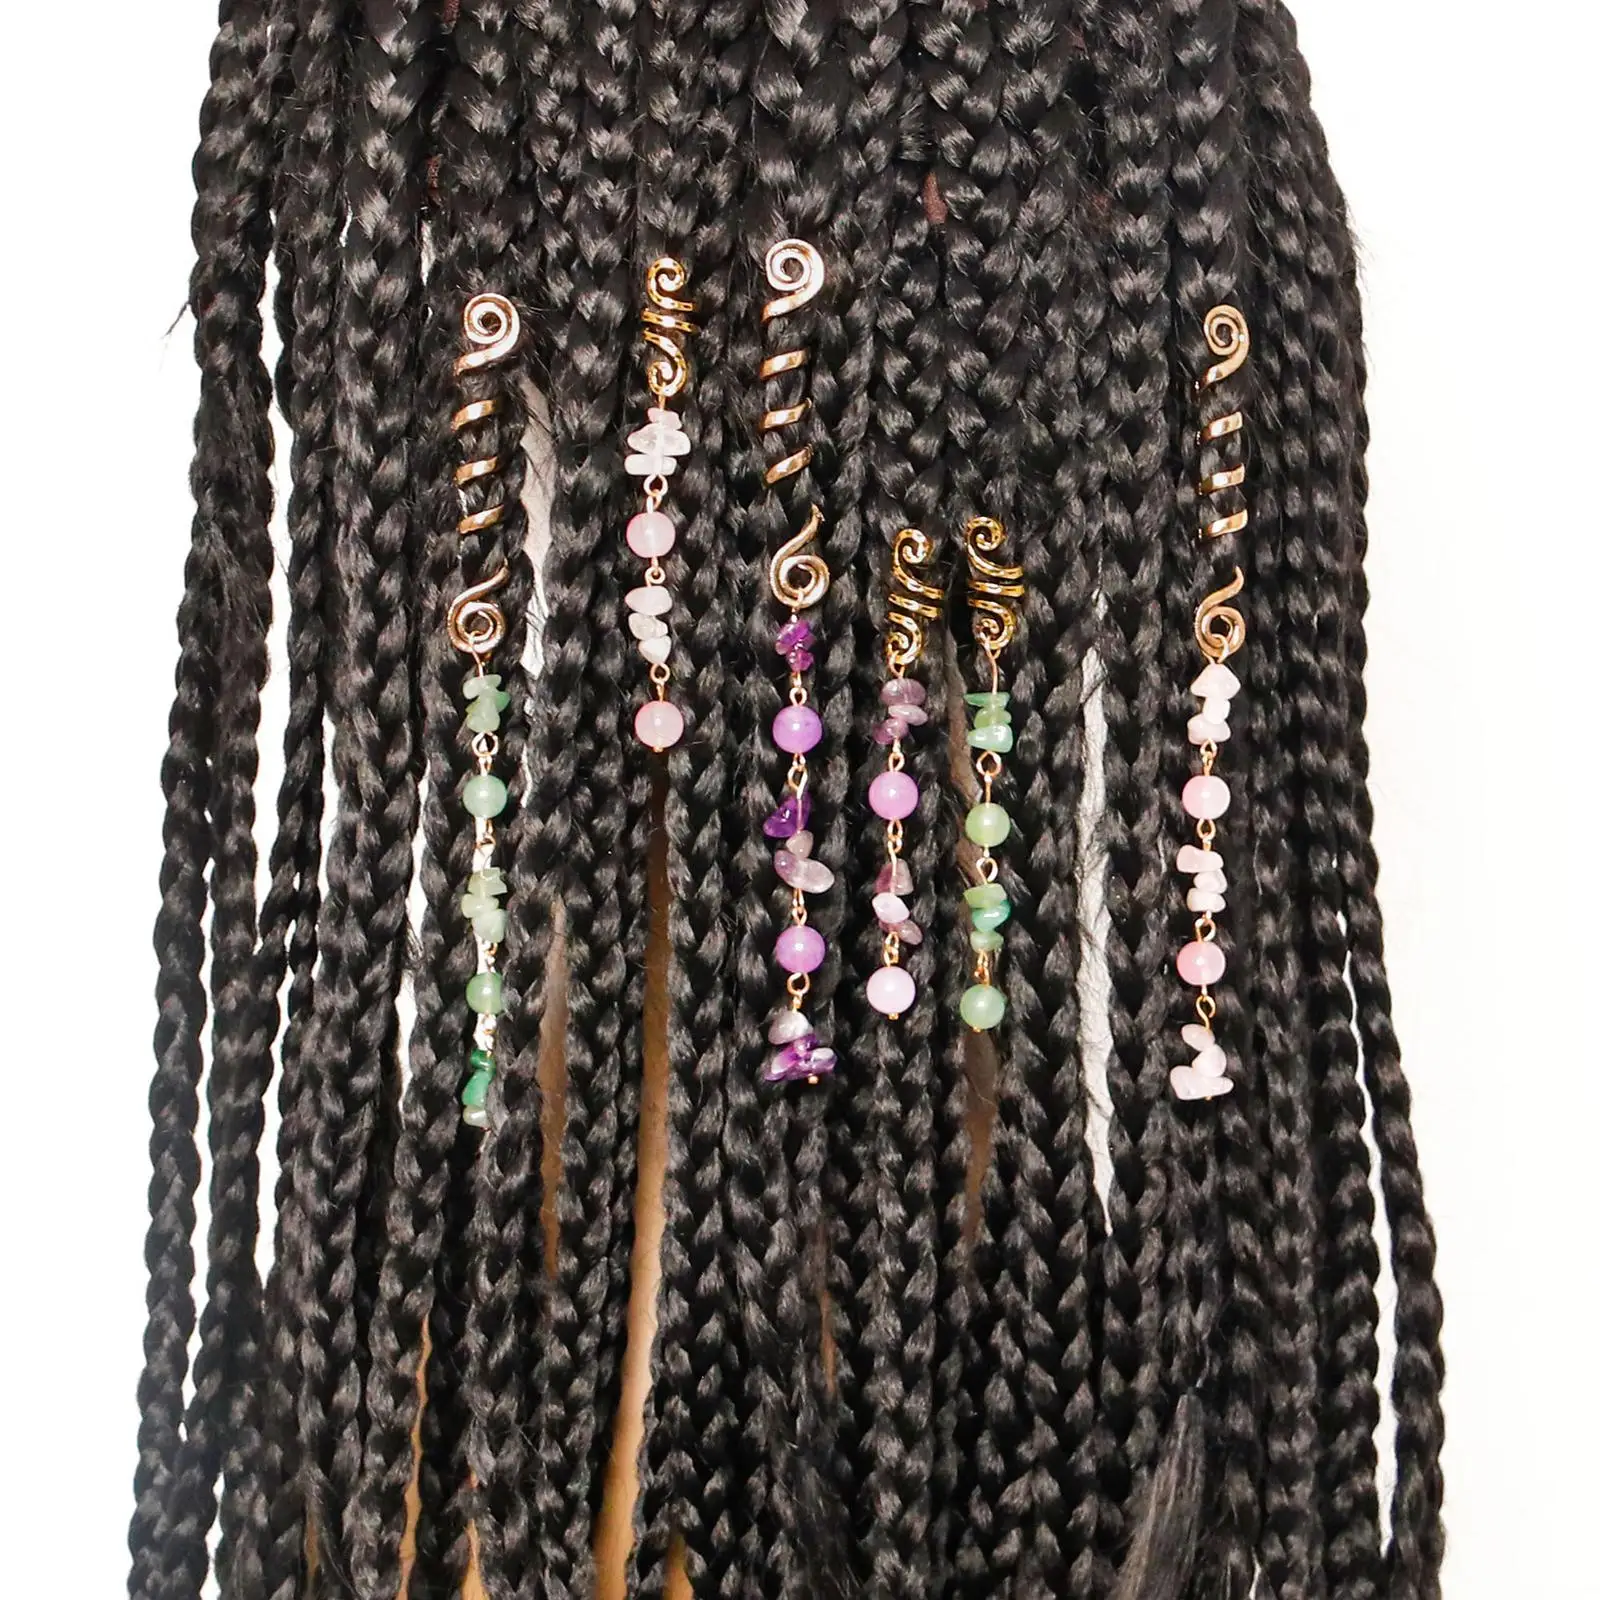 6x Hair Jewelry Hair Clips Pendants DIY Braiding Dreadlocks Hair Pendants Hair Cuffs Charms for Women Girls